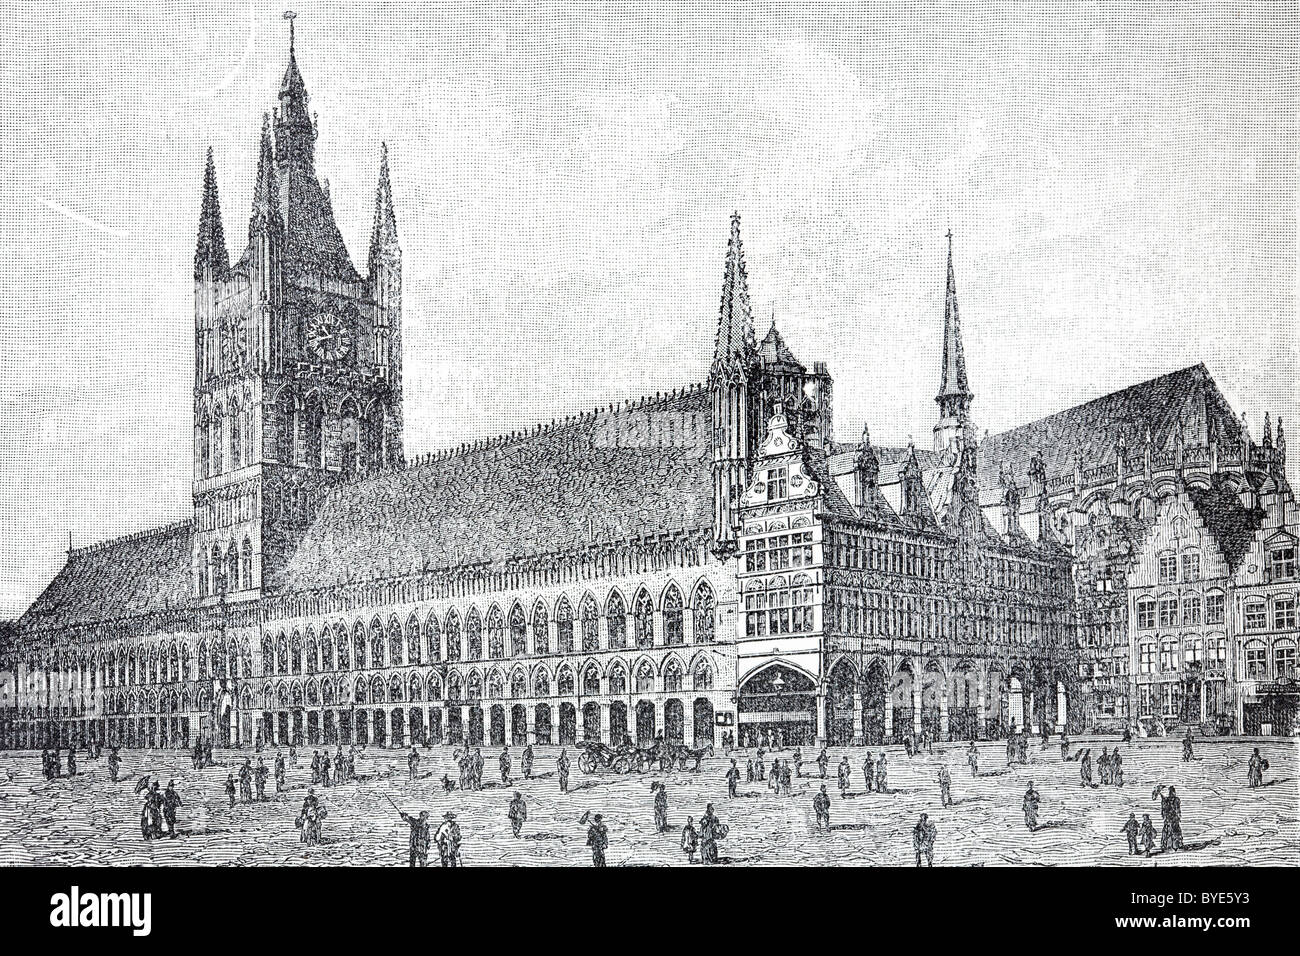 Panno gotico Hall, Ypres, Fiandre, in Belgio, libro storico illustrazione del XIX secolo, incisione in acciaio Foto Stock